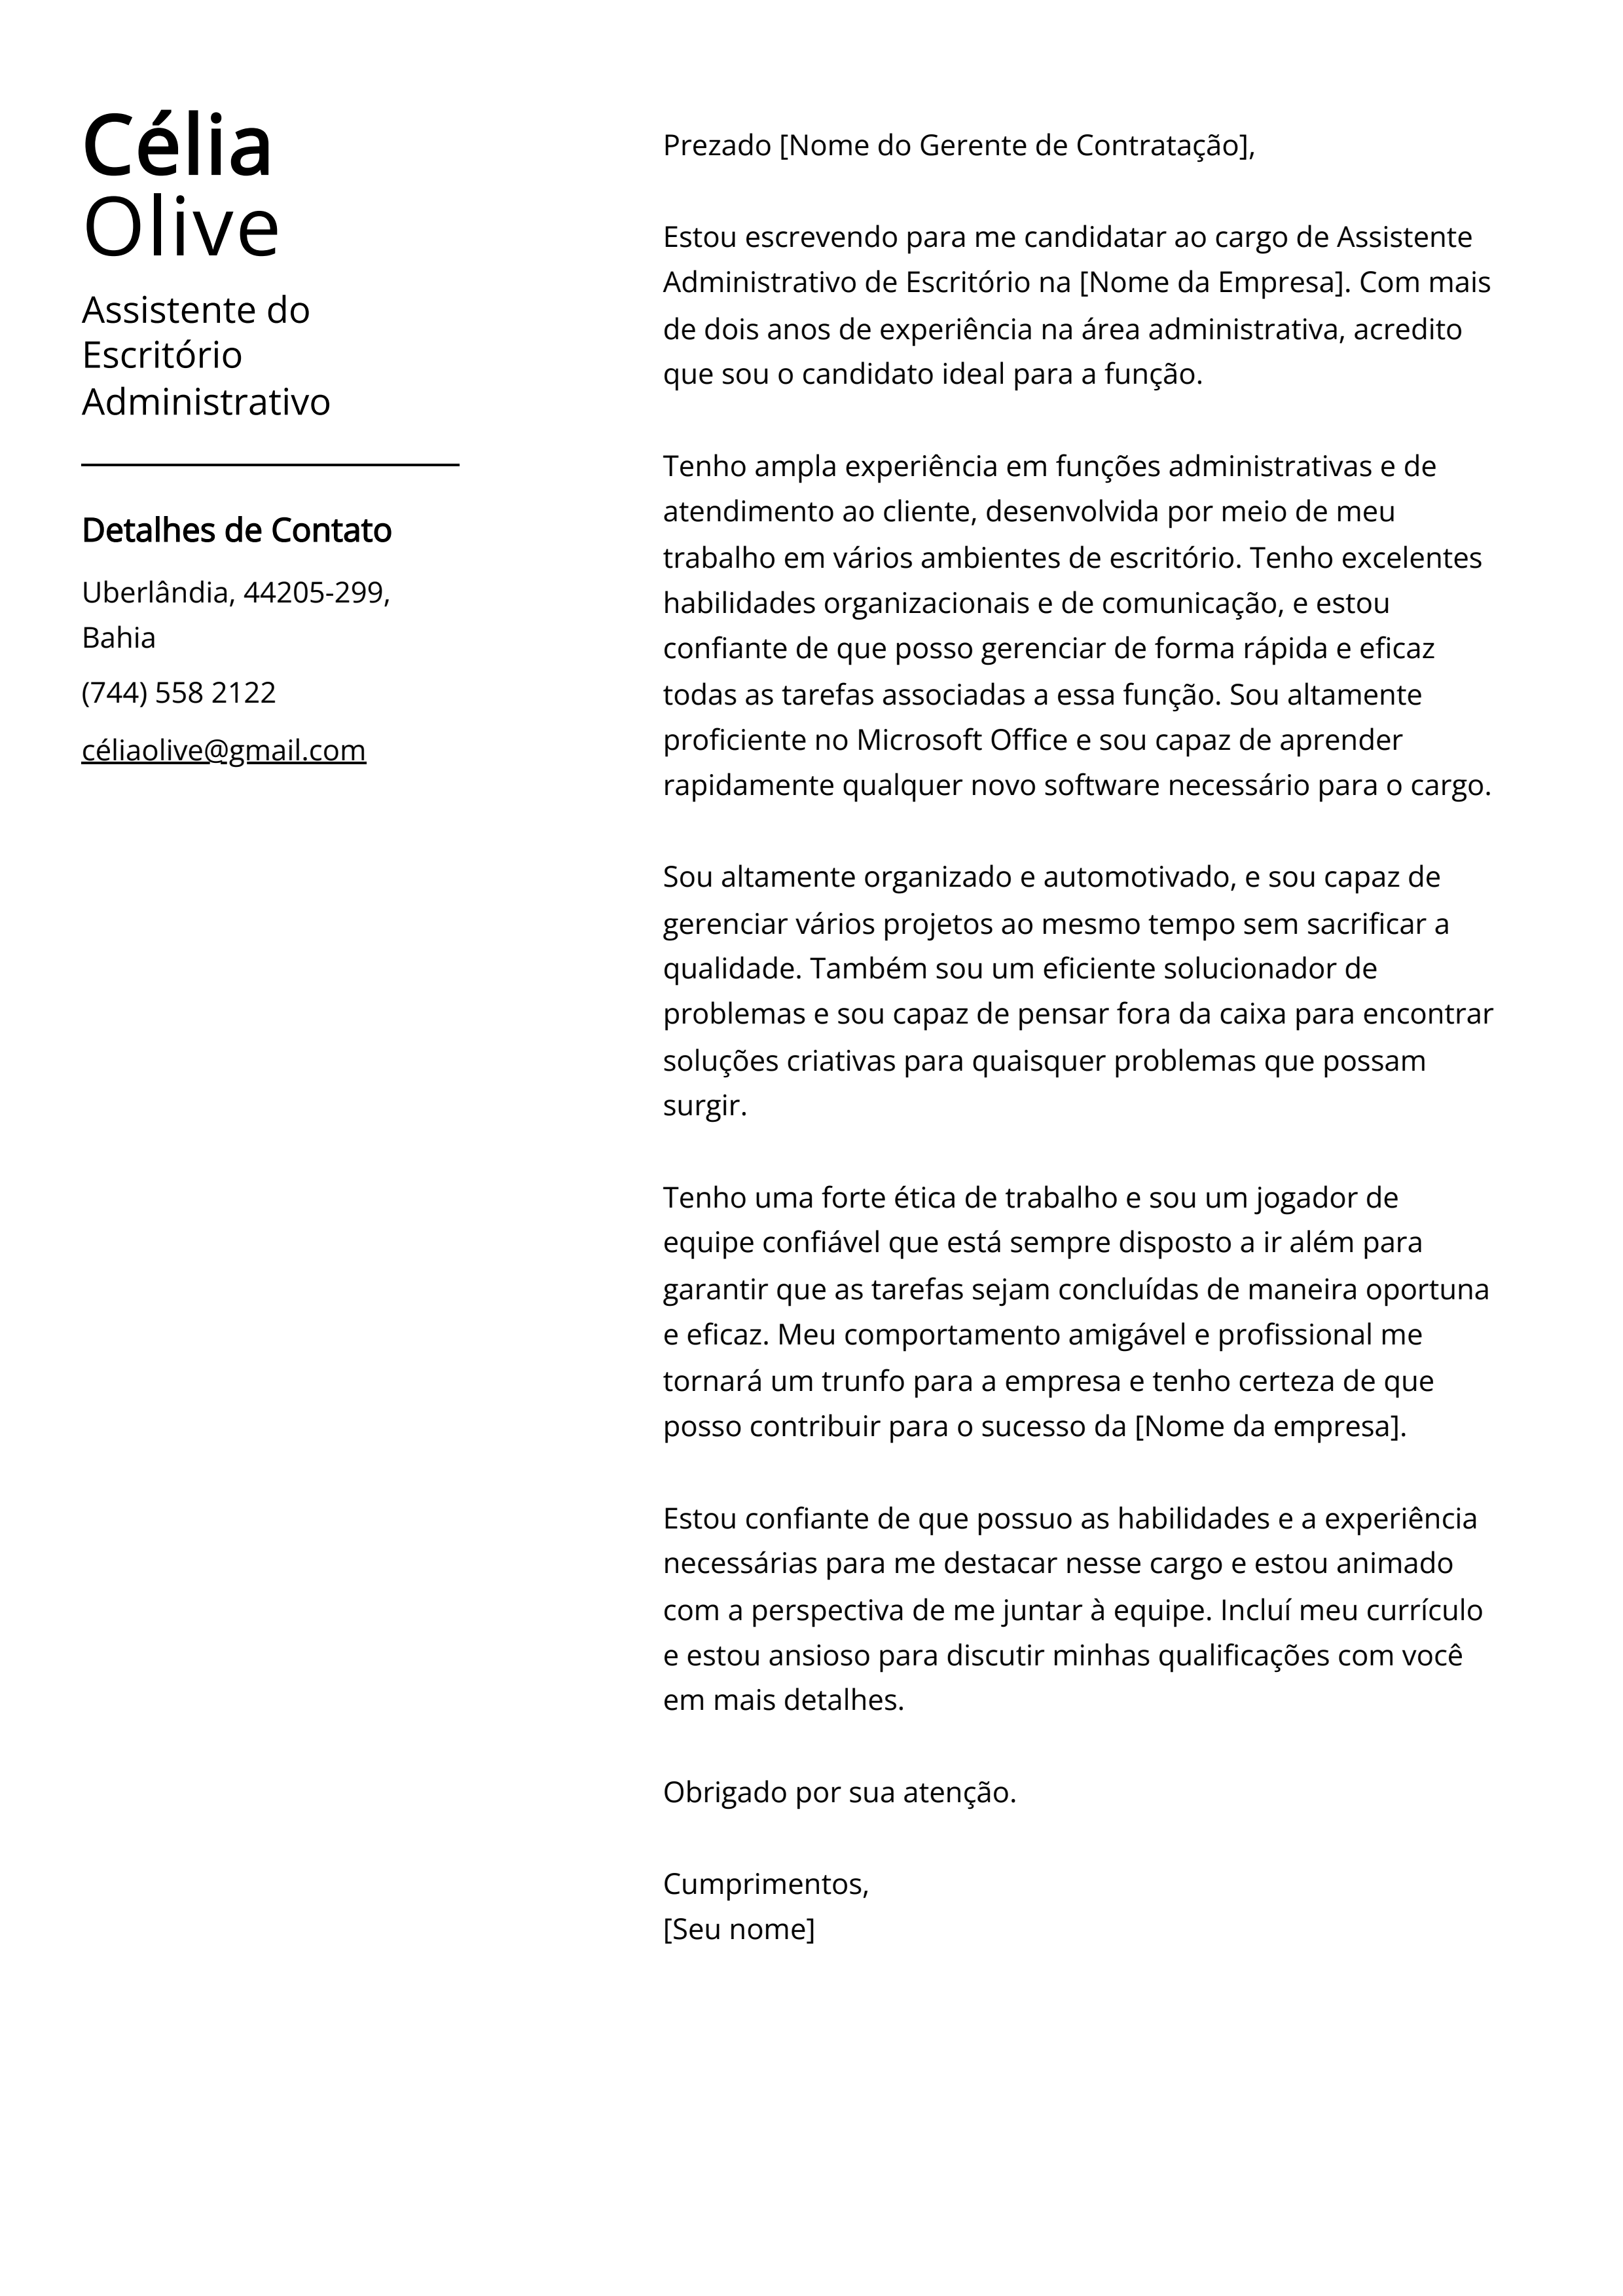 Exemplo de carta de apresentação do Assistente do Escritório Administrativo